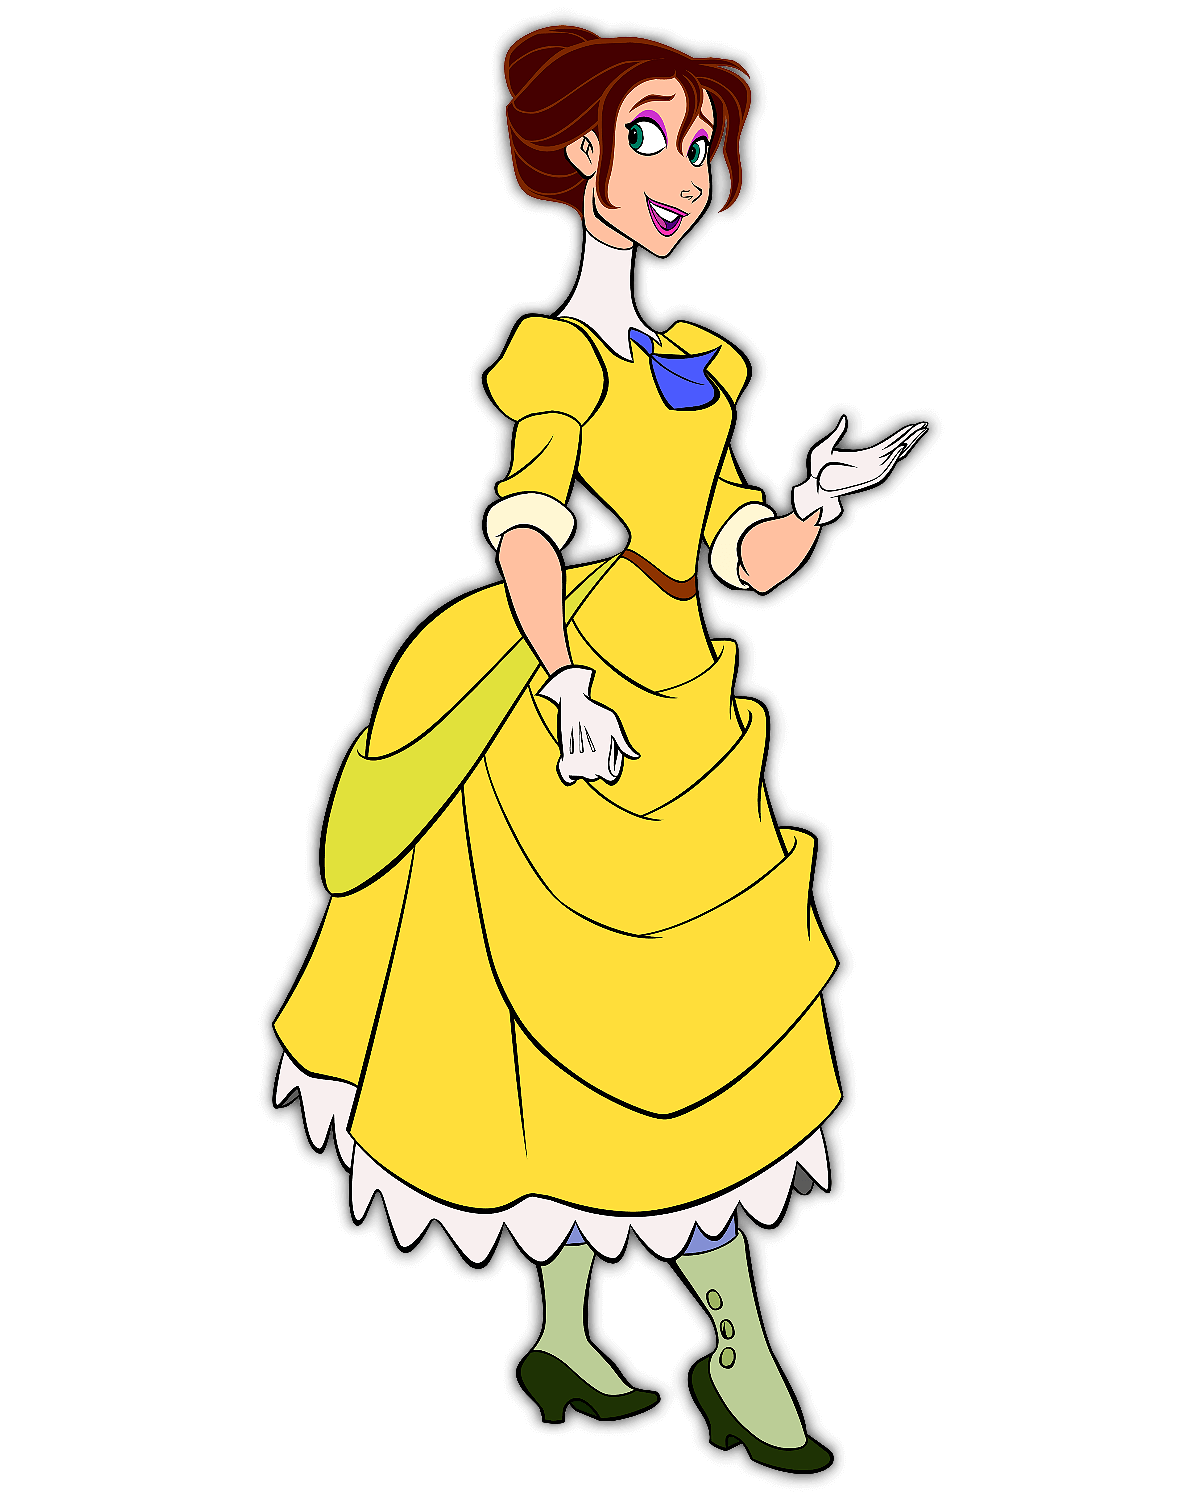 Jane Porter aus dem Disney Film Tarzan mit einem gelben eleganten Kleid und blauer Halskette